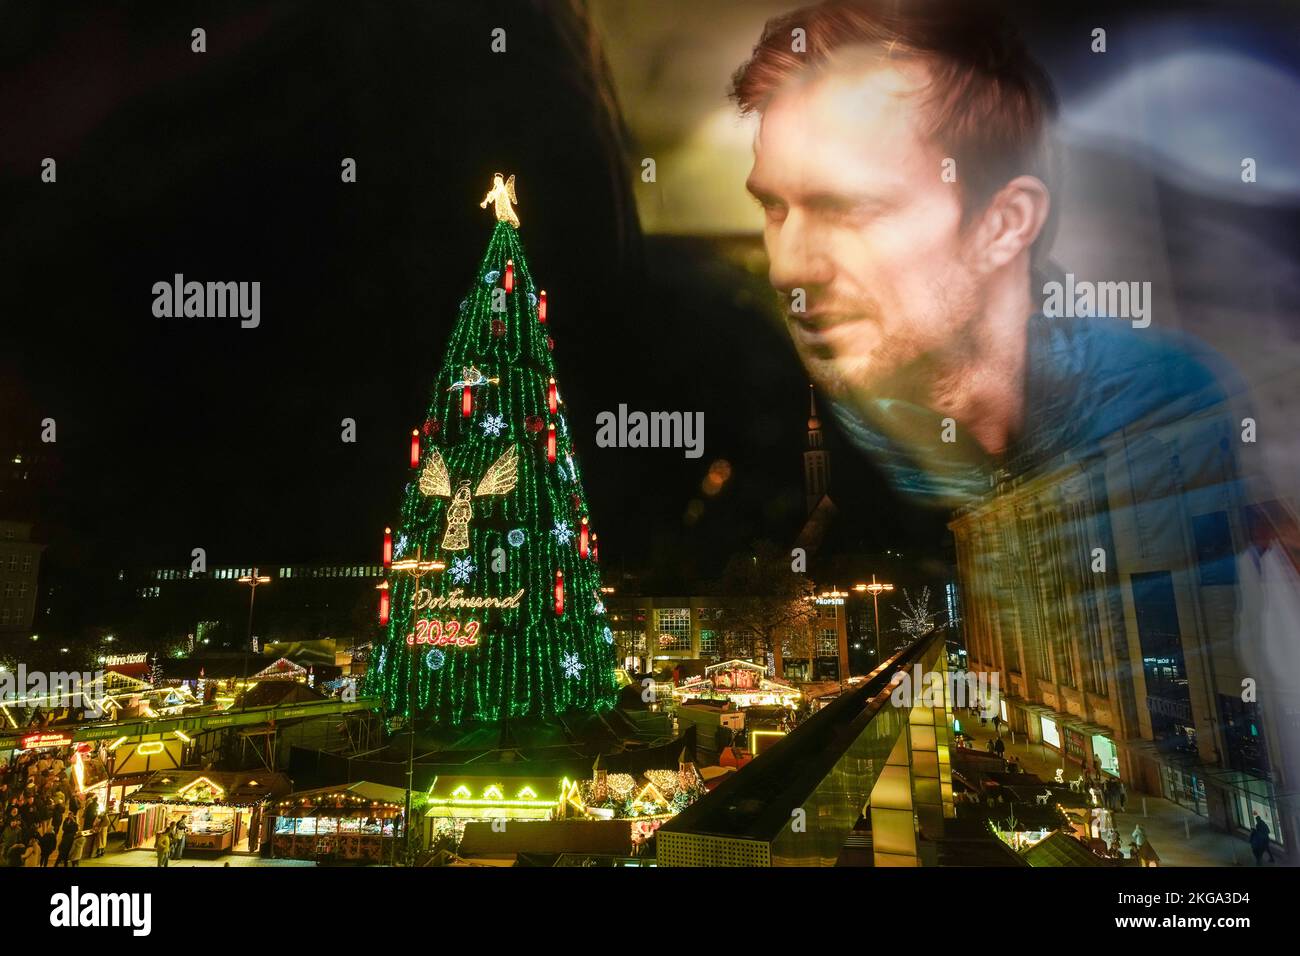 Dortmund, 22. November 2022: Der größte Weihnachtsbaum der Welt auf dem Dortmunder Weihnachtsmarkt ist 45 Meter hoch, besteht aus 1.000 roten Fichten aus dem Sauerland und wird mit 48.000 LED-Leuchten aufgehängt. Ein vier Meter hoher Engel leuchtet auf der Oberseite. --- Dortmund, 22.11.2022: Der größte Weihnachtsbaum der Welt auf dem Dortmunder Weihnachtsmarkt ist 45 Meter hoch, besteht aus 1000 Rotfichten aus dem Sauerland und ist mit 48,000 LED-Leuchten ausgestattet. Auf der Spitze leuchtet ein vier Meter großer Engel. Stockfoto